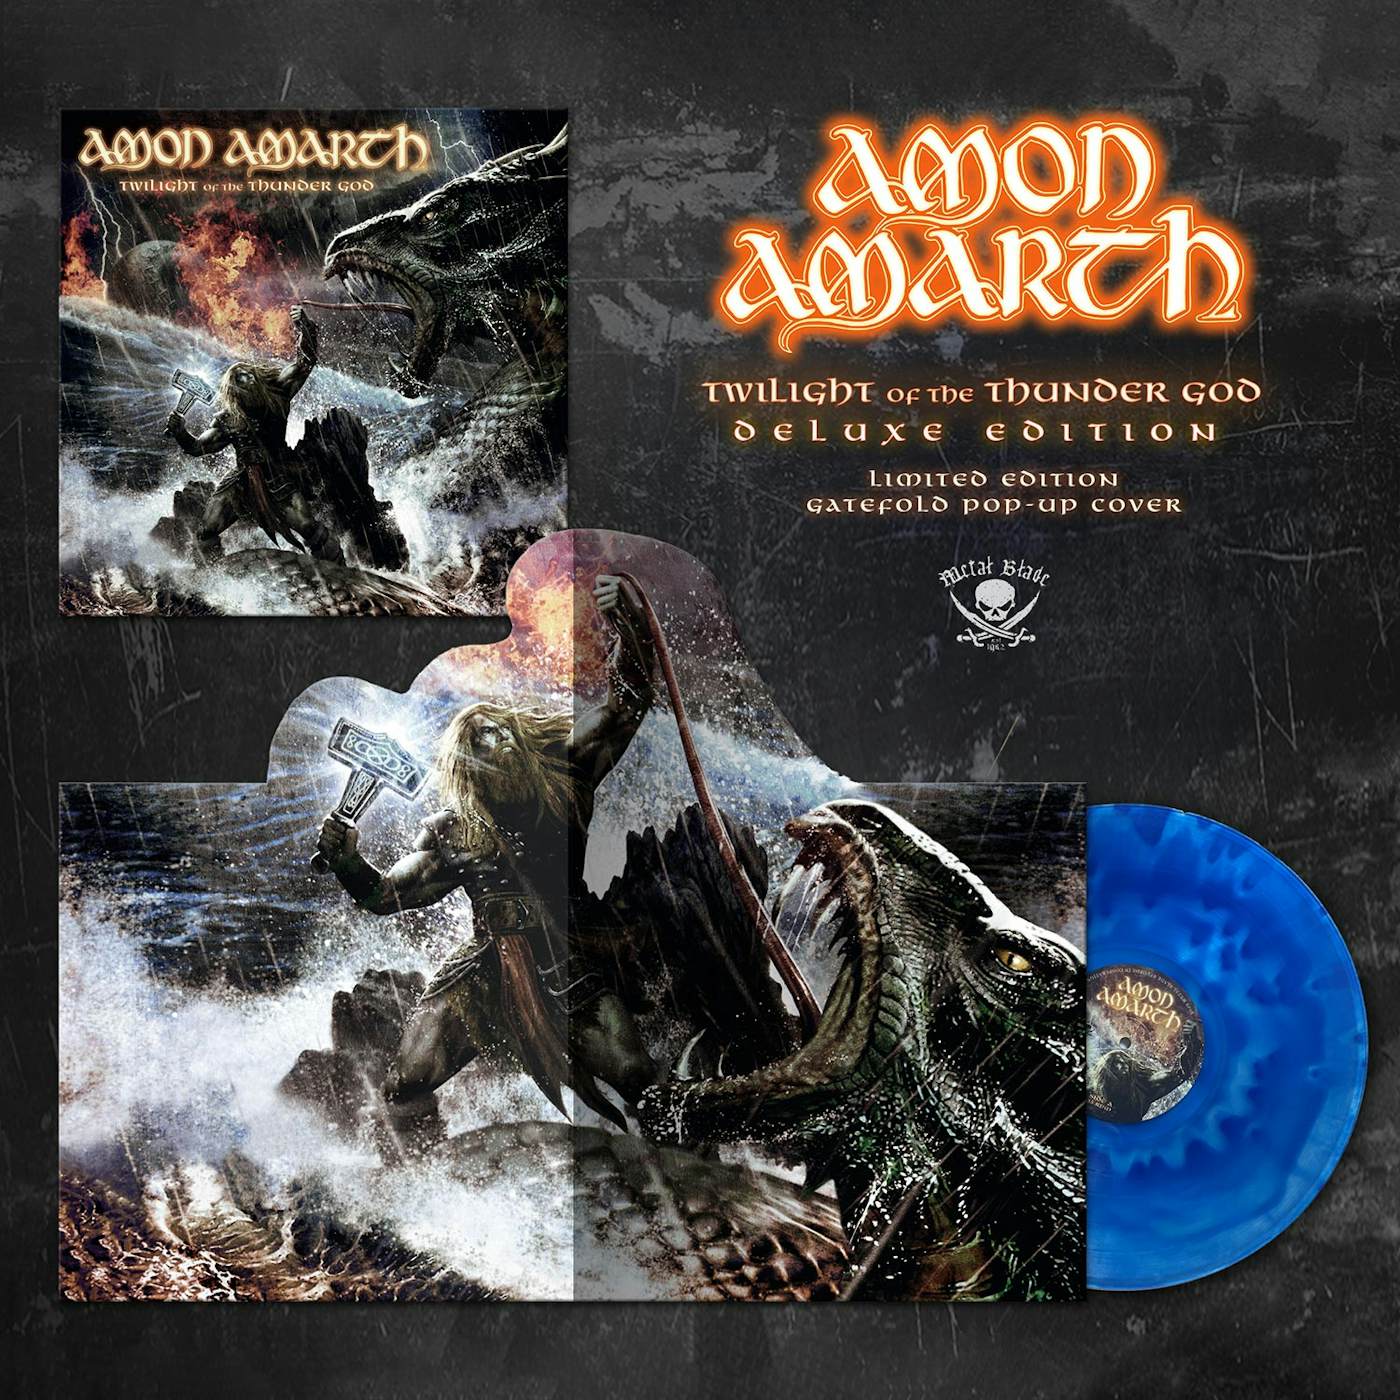 Amon Amarth – Free Will Sacrifice Lyrics